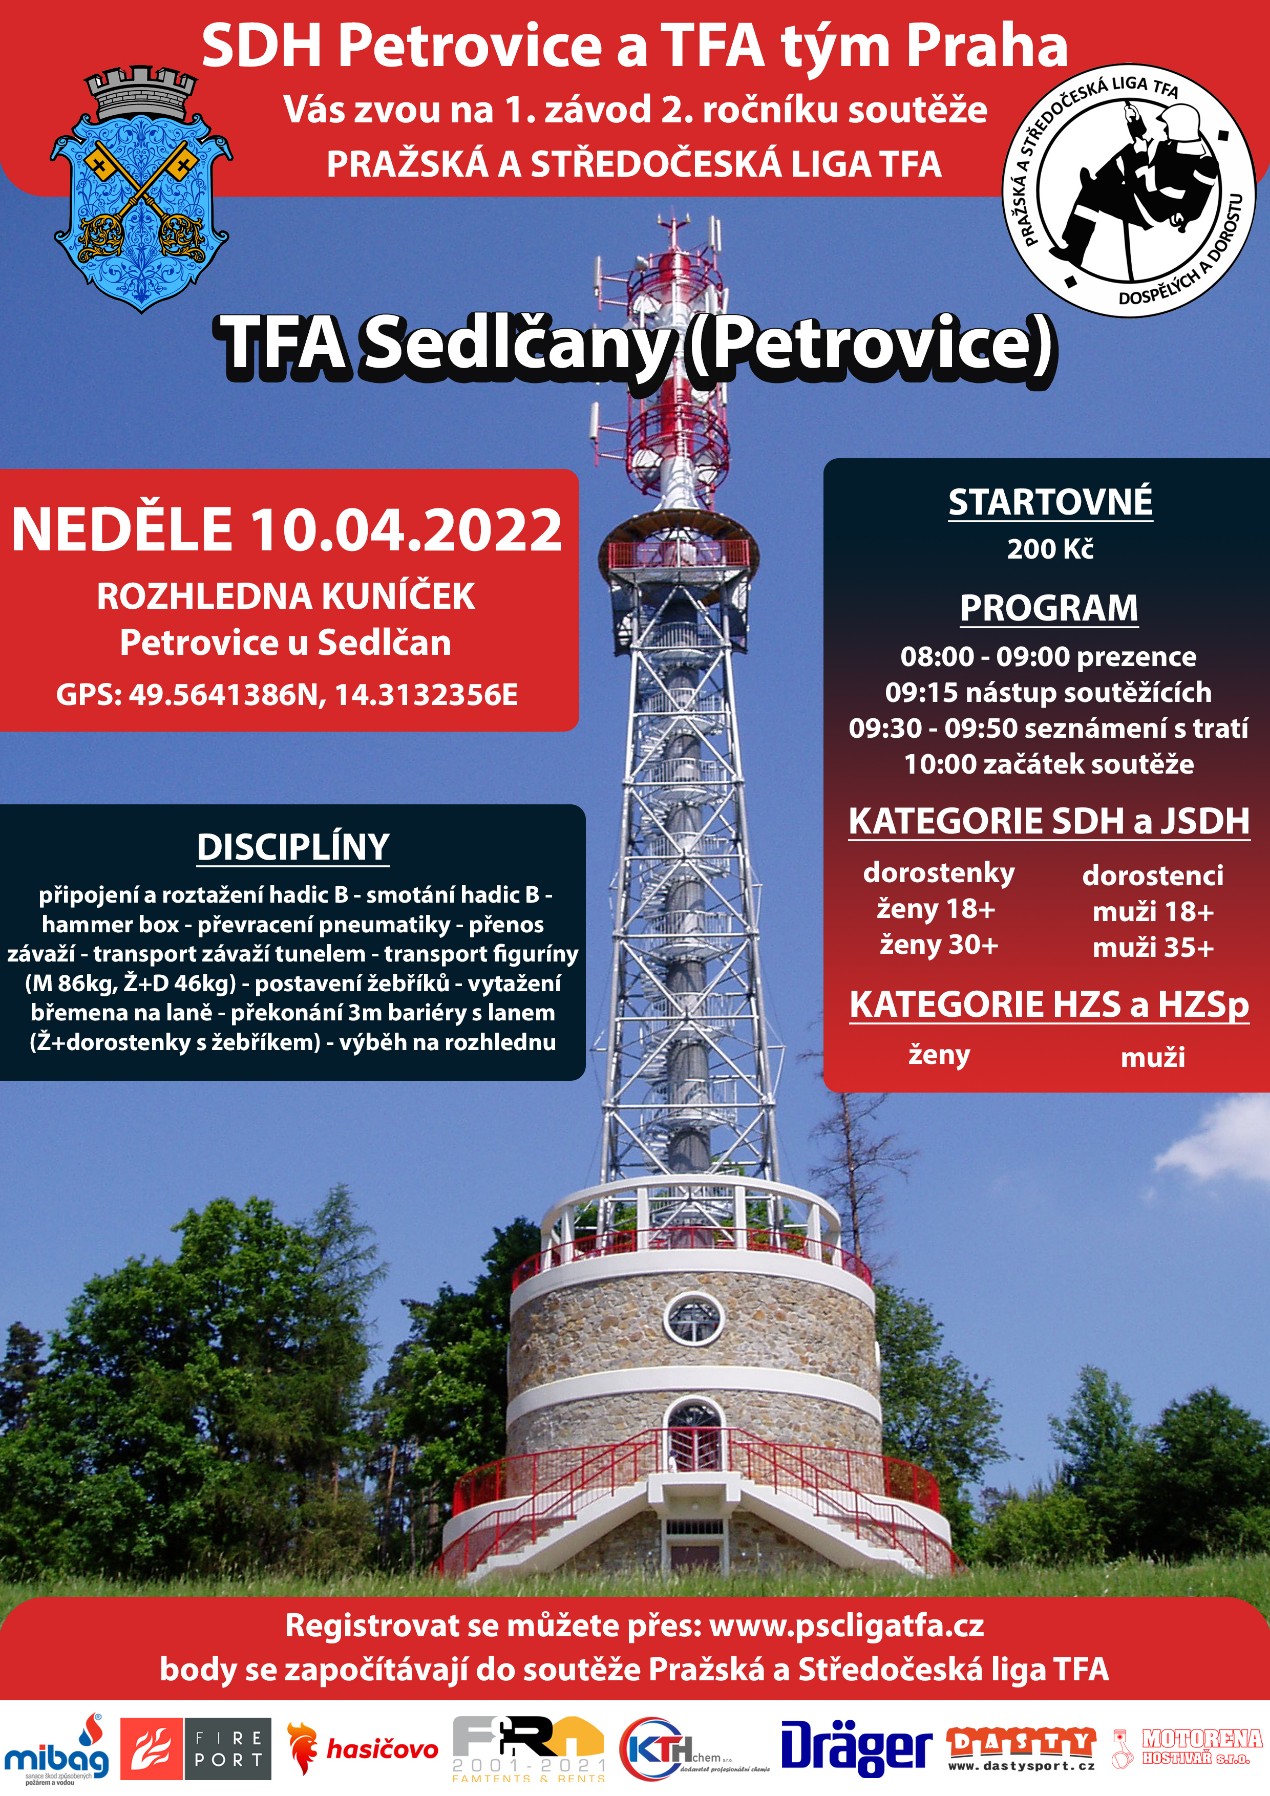 TFA-Sedlcany-(Petrovice)_2022_plakat